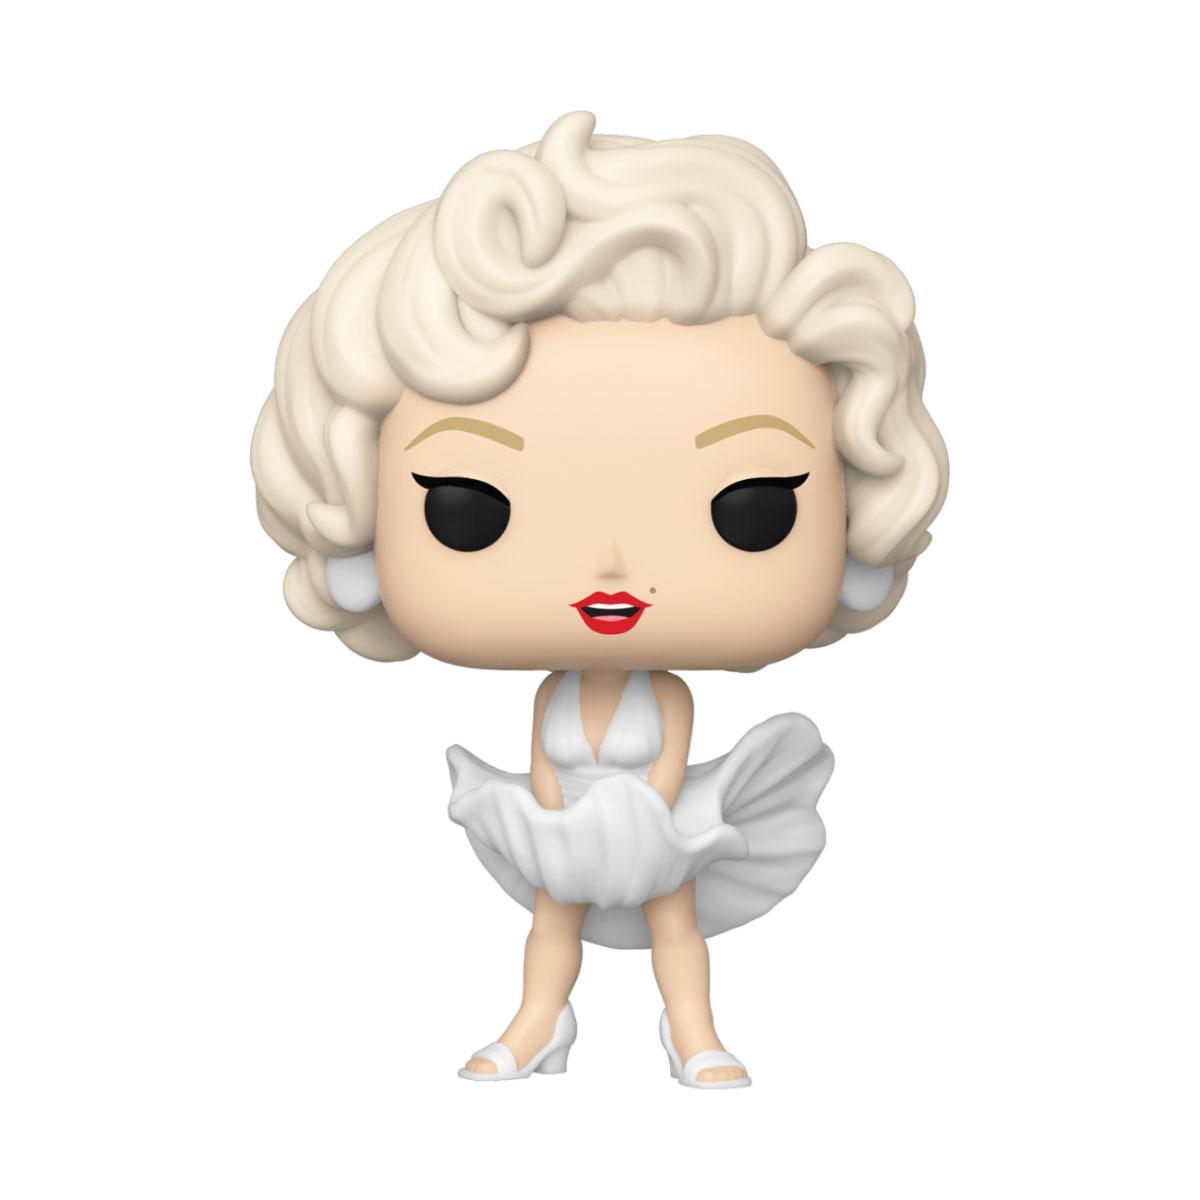 Marilyn Monroe POP! Icons Vinyl Figure Marilyn Monroe (White Dress) 9 cm